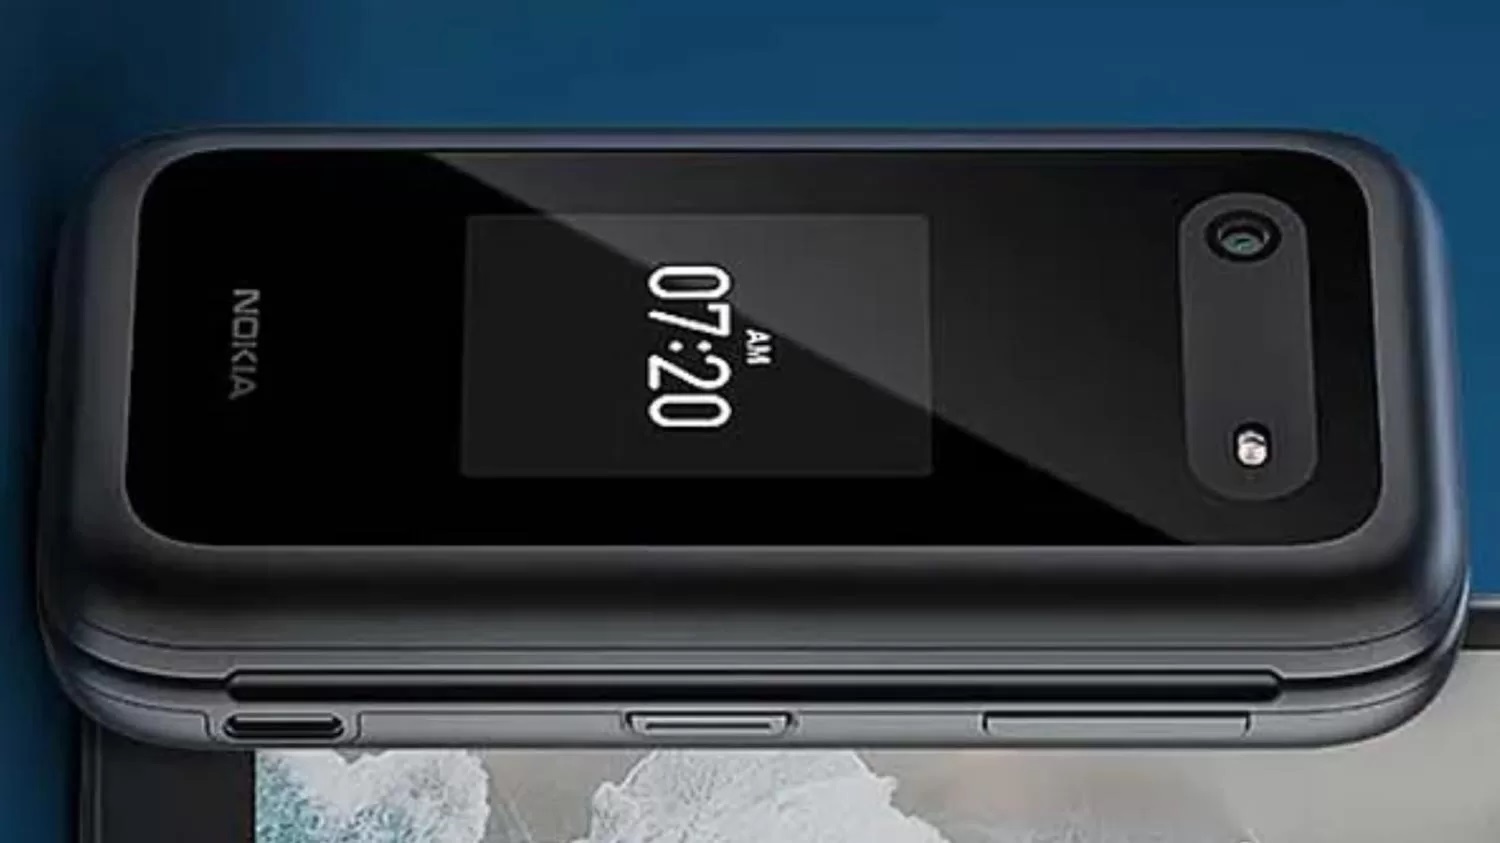 Nokia 2760 Flip 4G: Reinkarnation der "Clamshell" von 2007 mit 4G- und KaiOS-Unterstützung für nur 79 US-Dollar